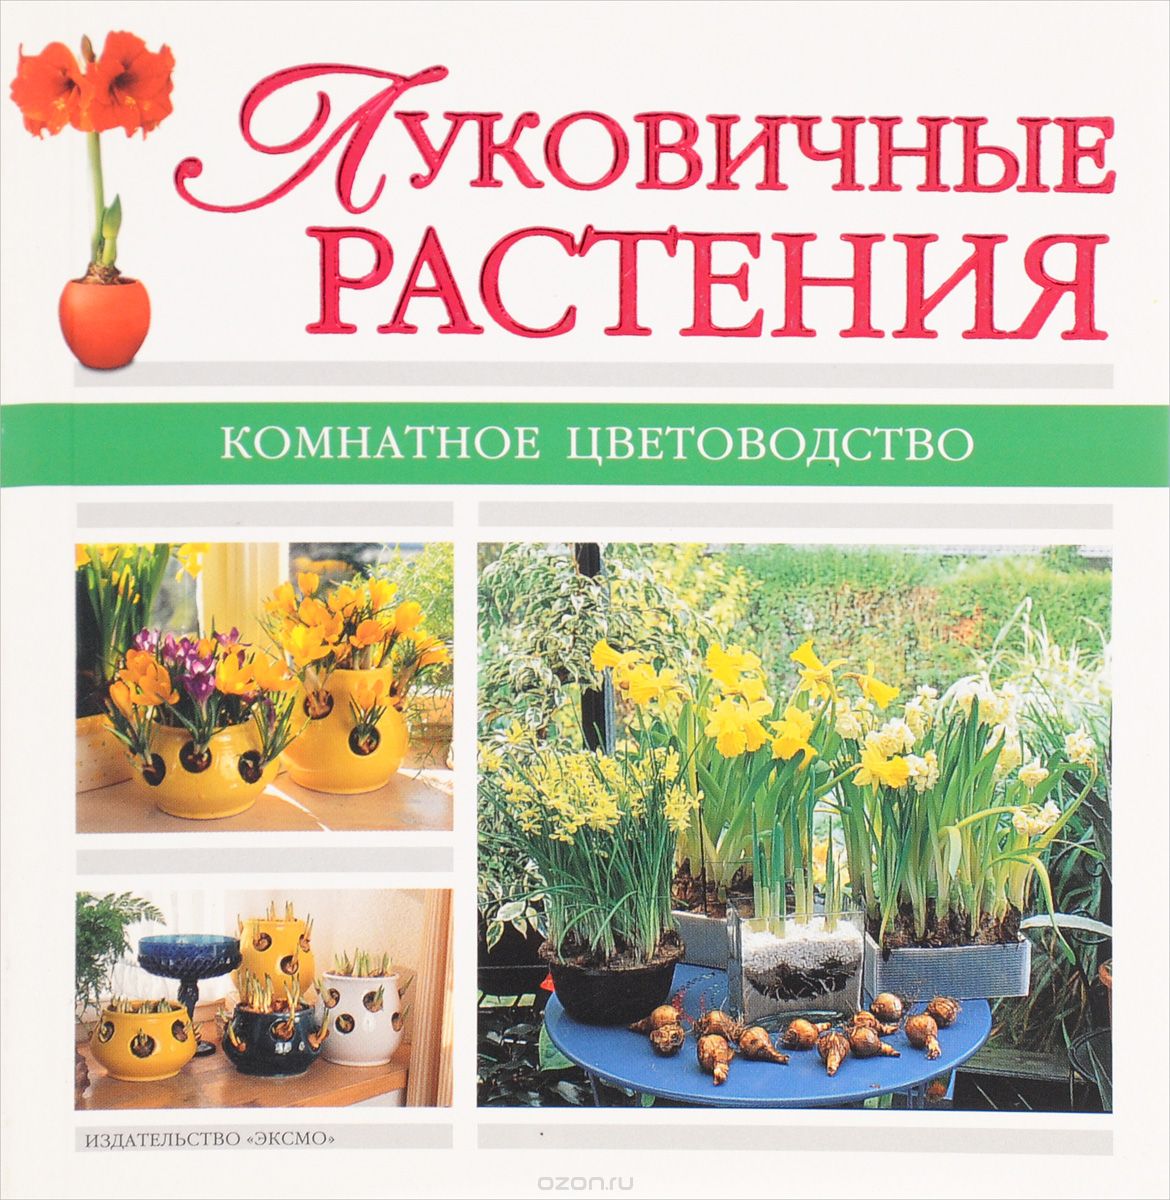 Скачать книгу "Луковичные растения, А. Лимаренко, Т. Палеева"